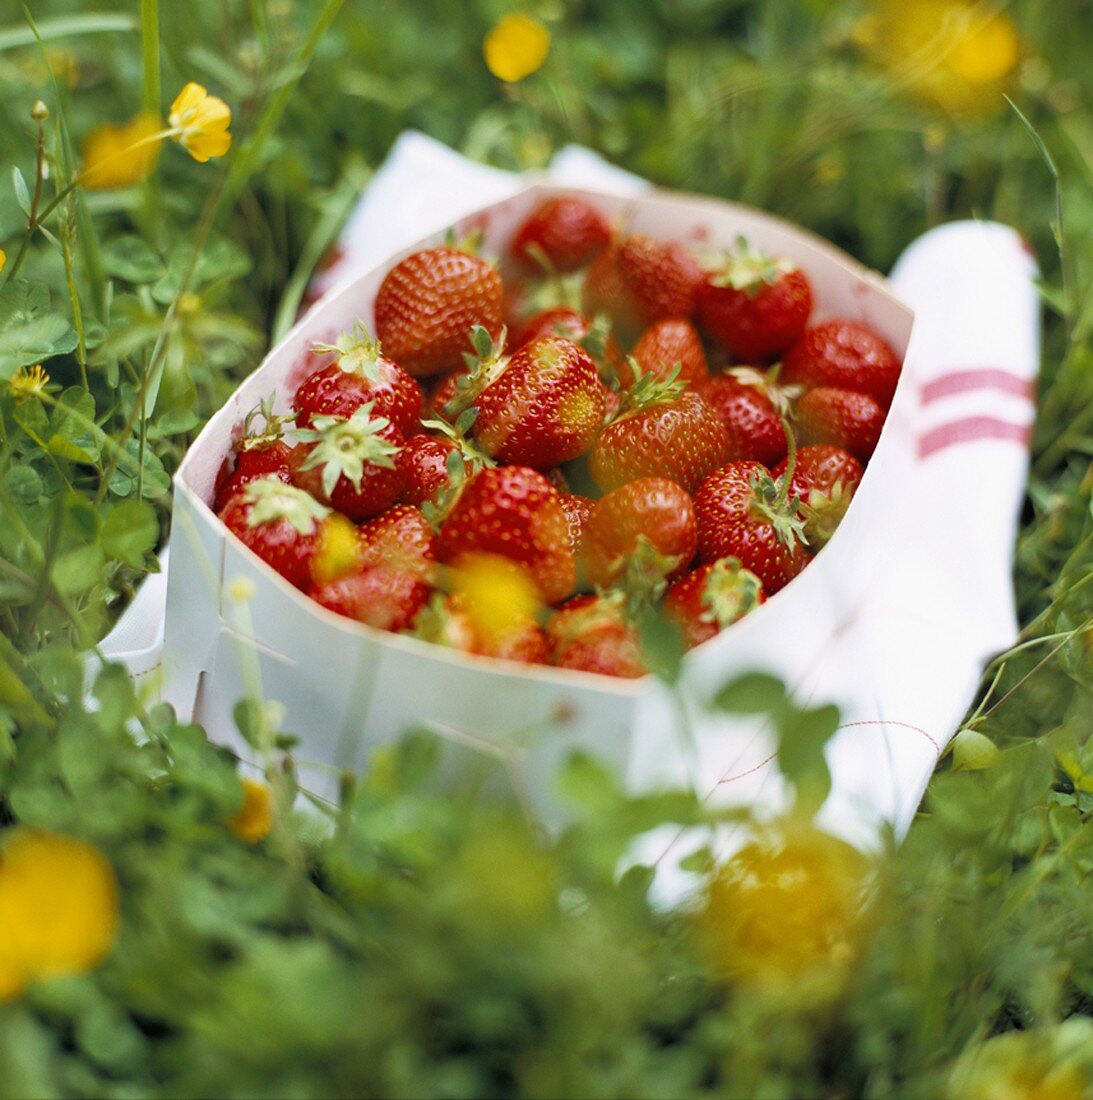 Fresh strawberries in punnet on grass